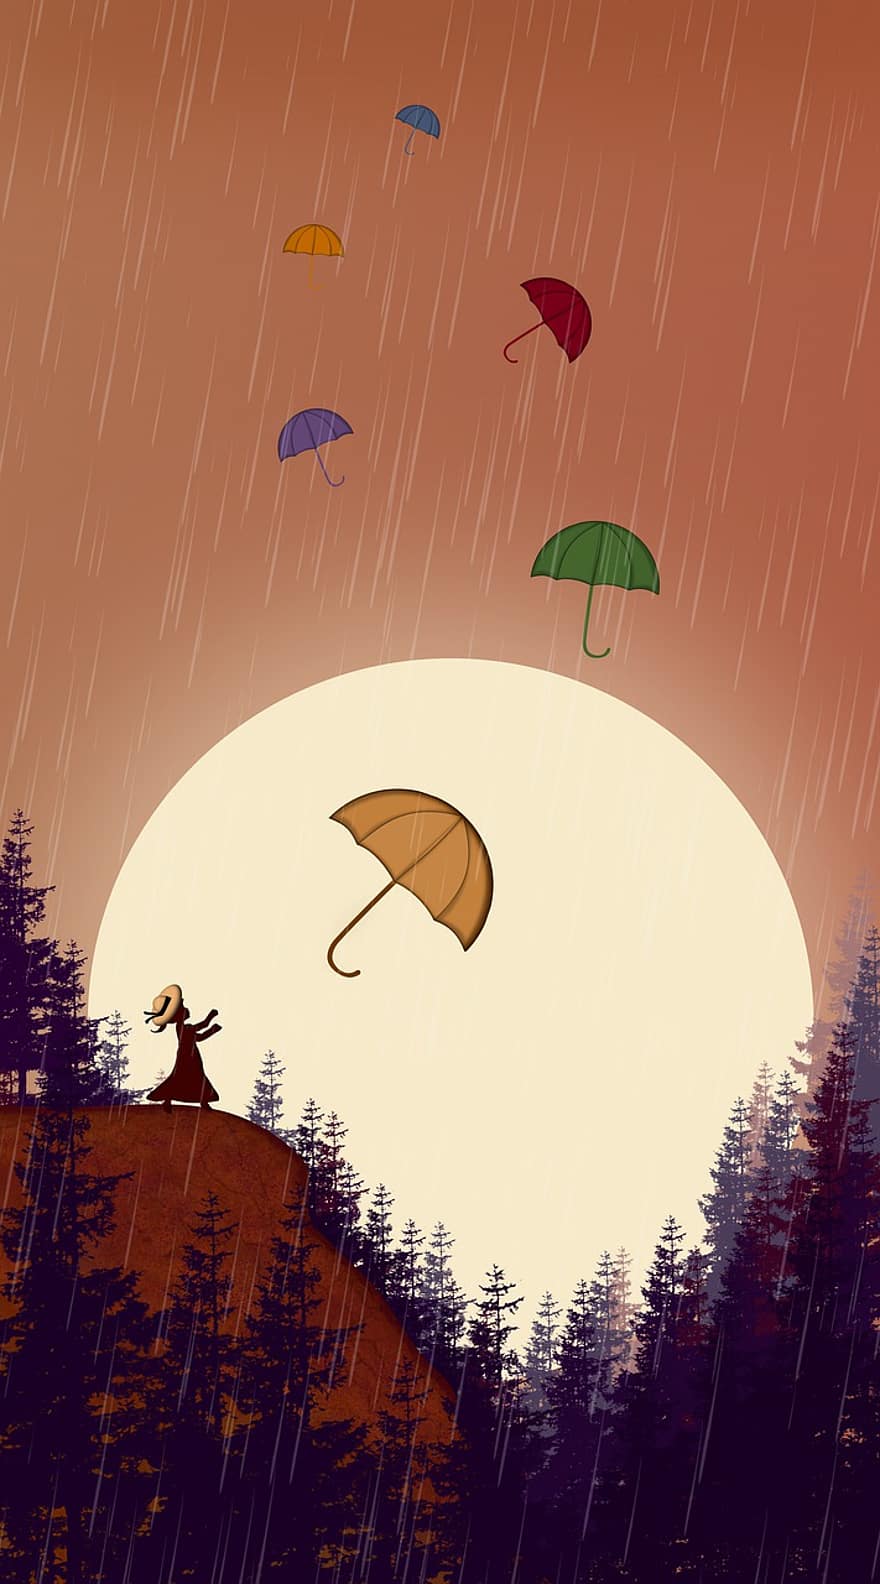 deszcz, parasol, zachód słońca, Natura, dziewczynka, las, wektor, jesień, drzewo, ilustracja, pogoda